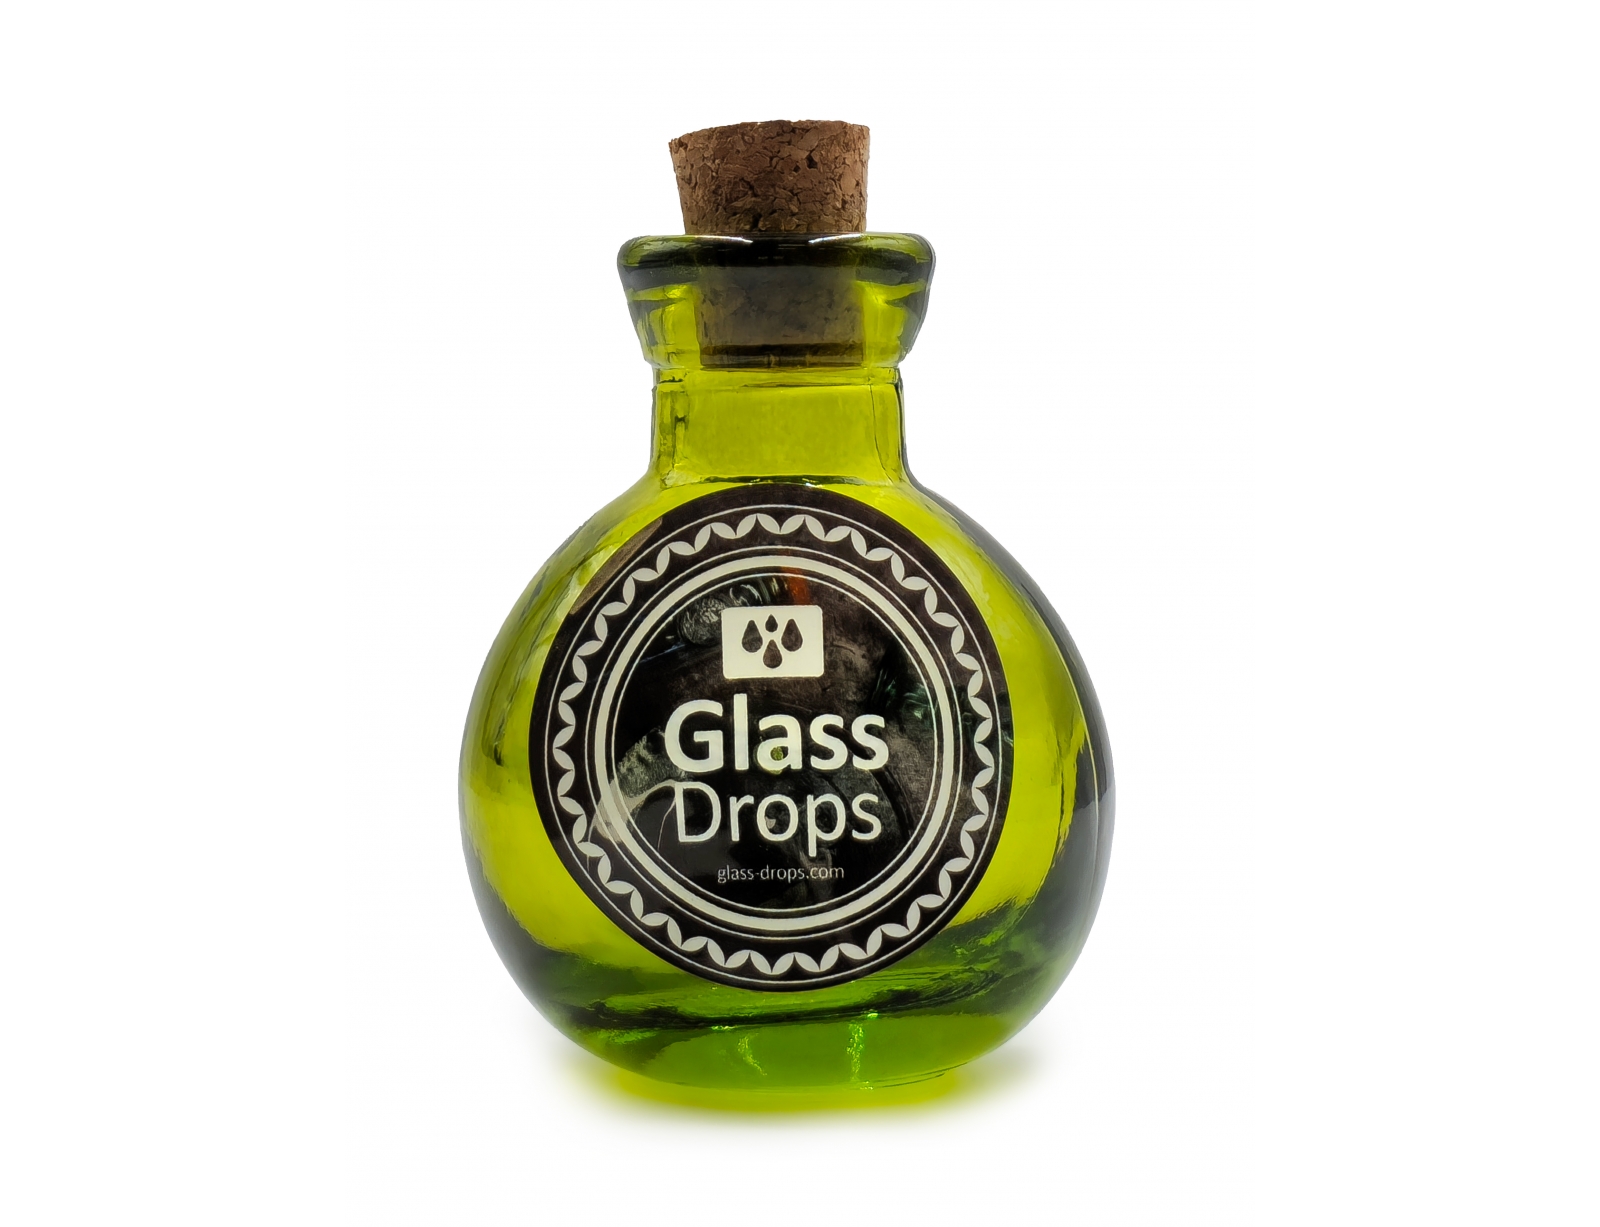 Εικόνα Διακοσμητικό Μπουκάλι με πώμα Glass Drops Βοlas (5321DB750) Aπό 100% ανακυκλωμένο γυαλί, Xωρητικότητας 125ml, Διαστάσεων Ø 7 x Υ 10 cm, Green